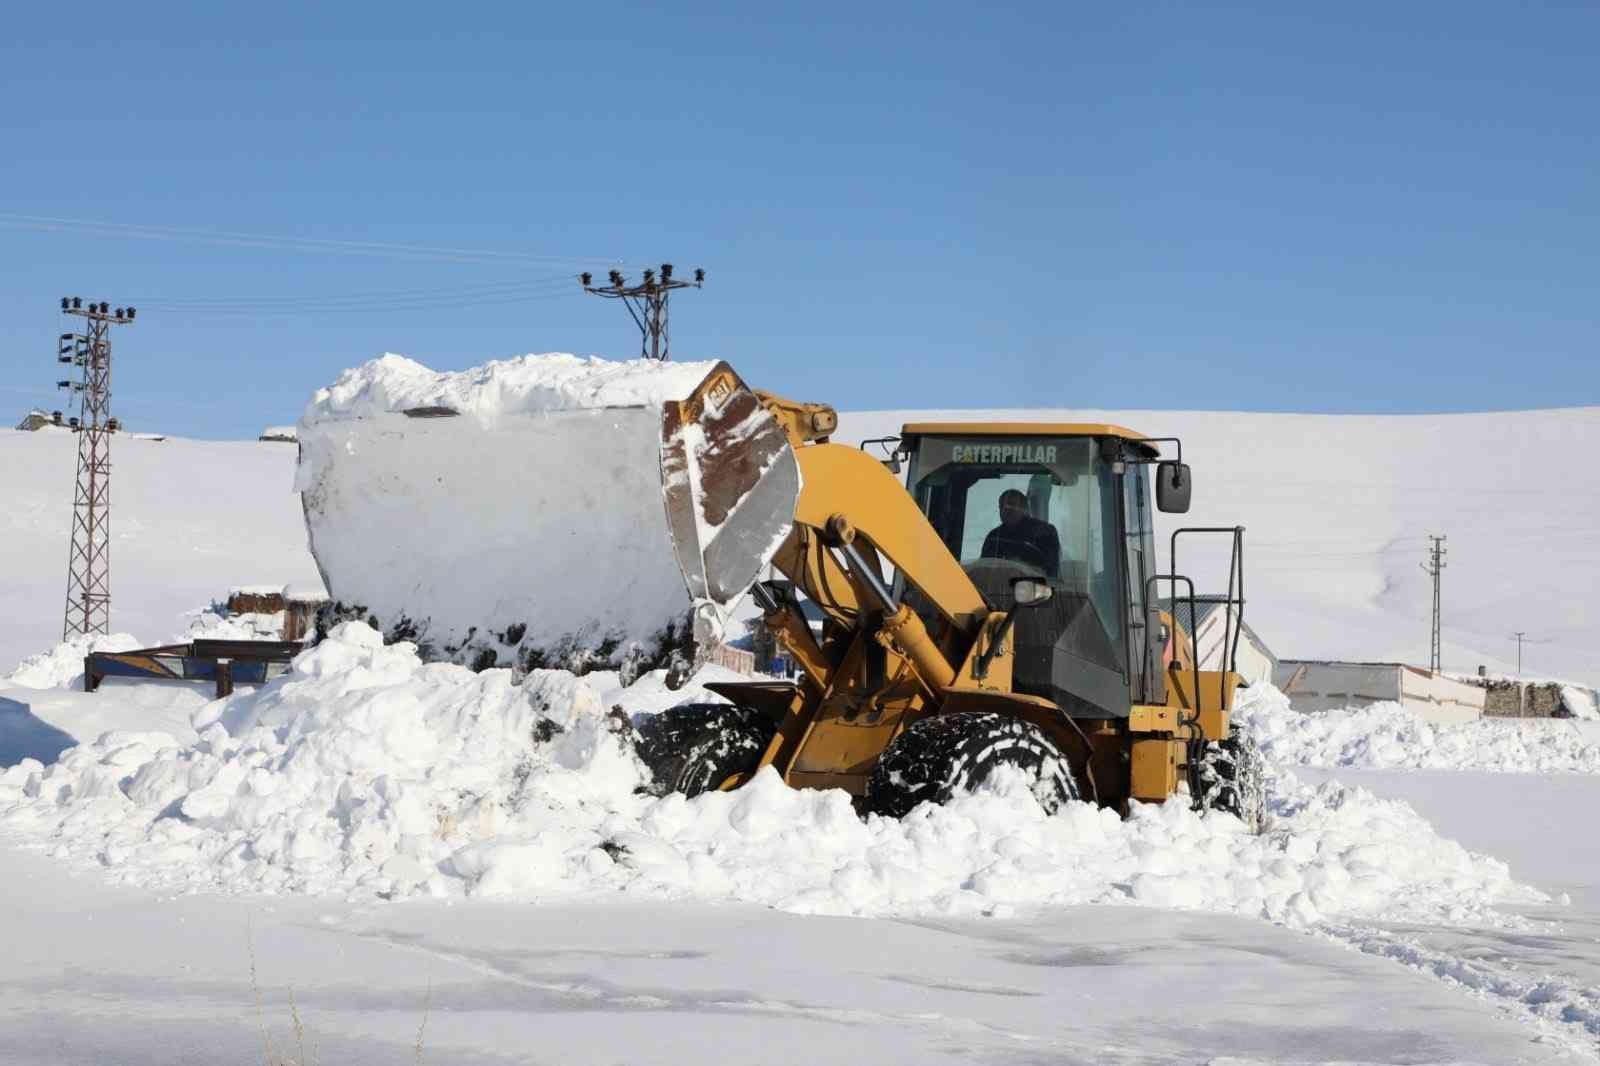 Ağrı’da Kar Kaplanları kapanan yollar için seferber oldu #agri